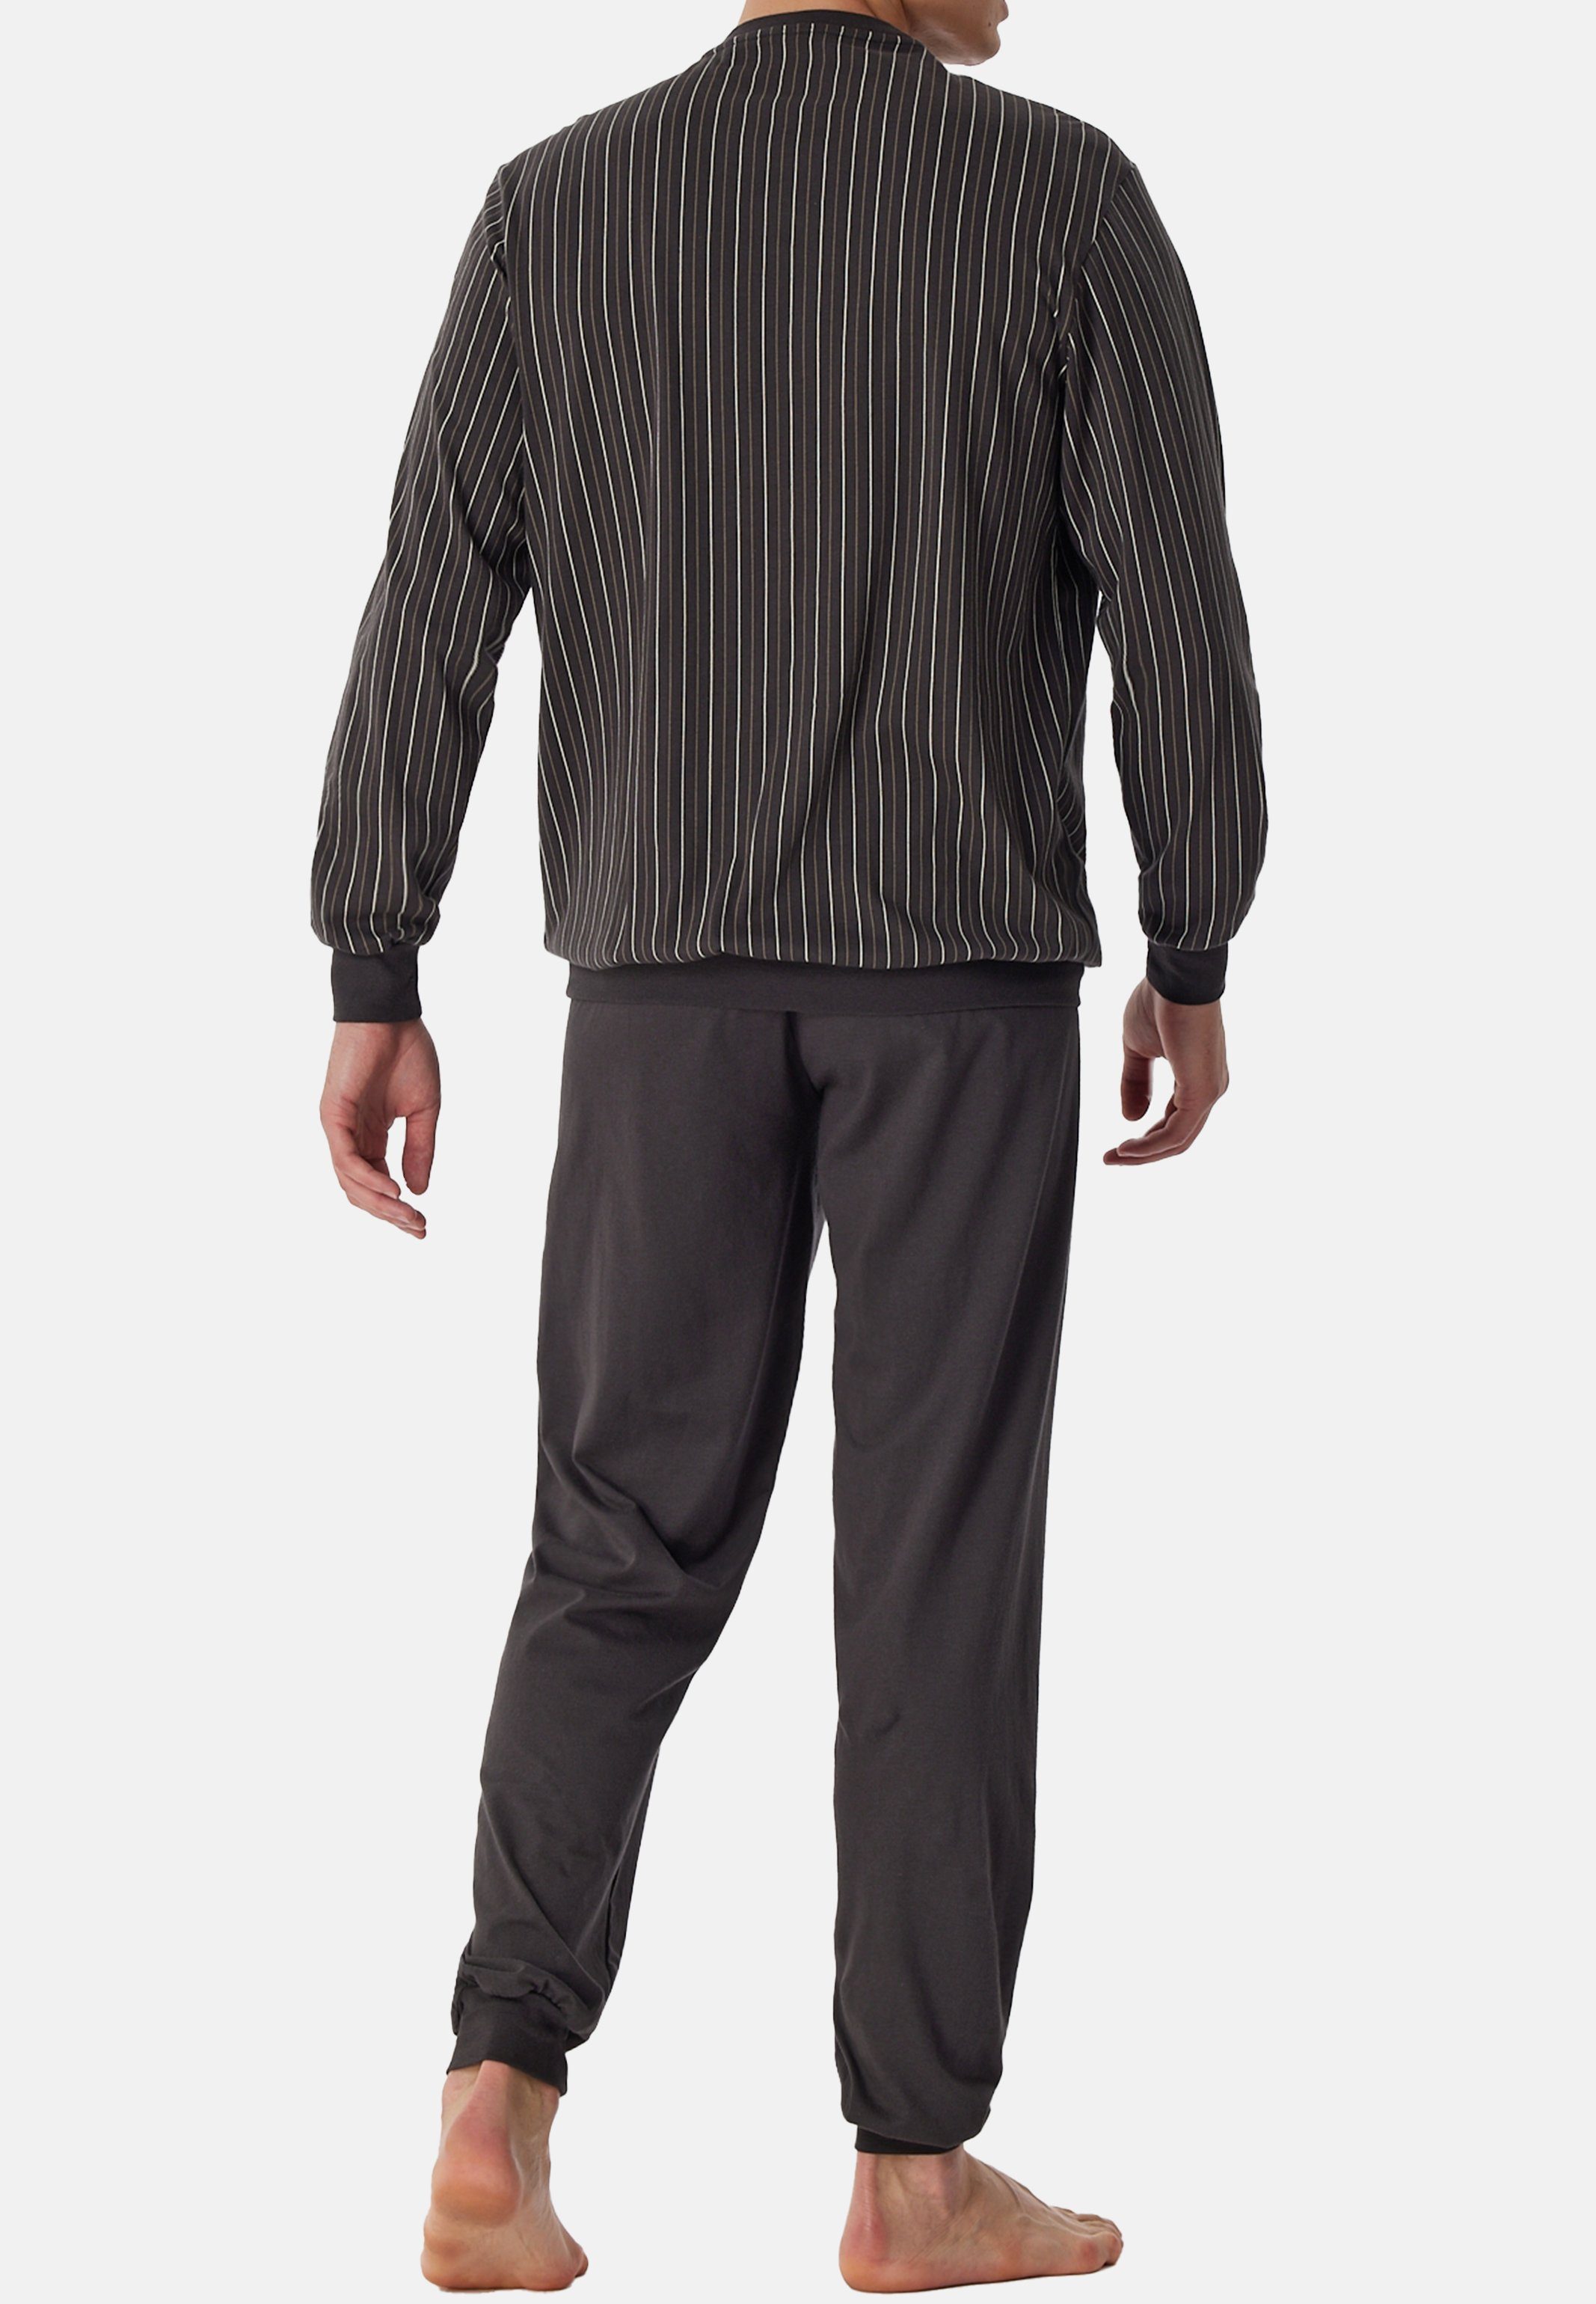 tlg) Comfort Schlafanzug Pyjama 2 anthrazit Haut Cotton der Baumwolle (Set, - Nightwear Schiesser - Angenehm Organic auf